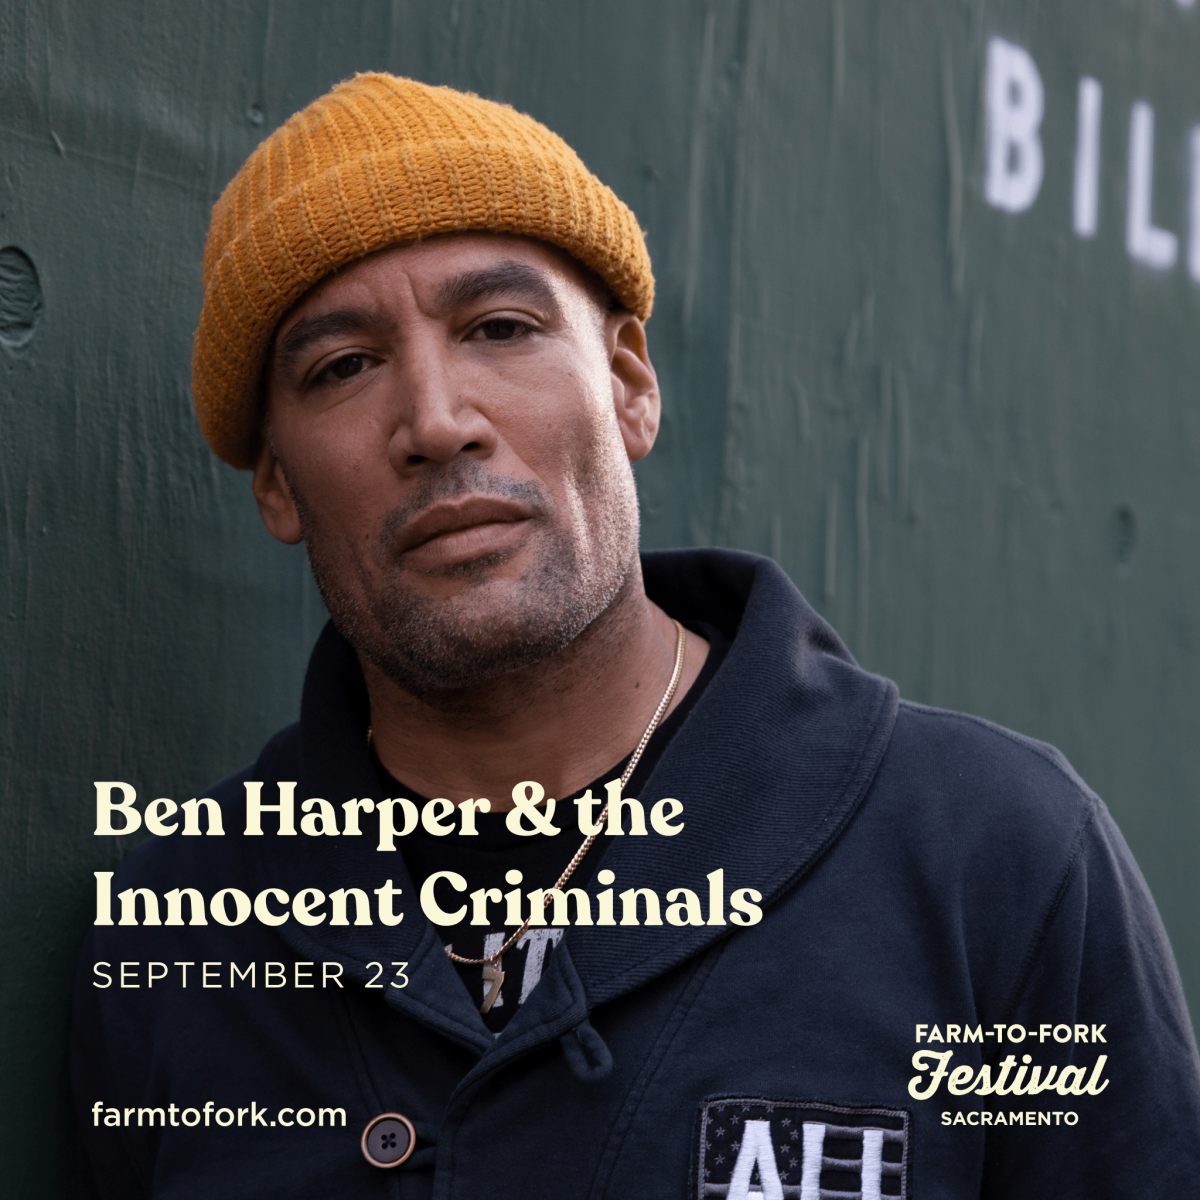 Ben Harper & the Innocent Criminals